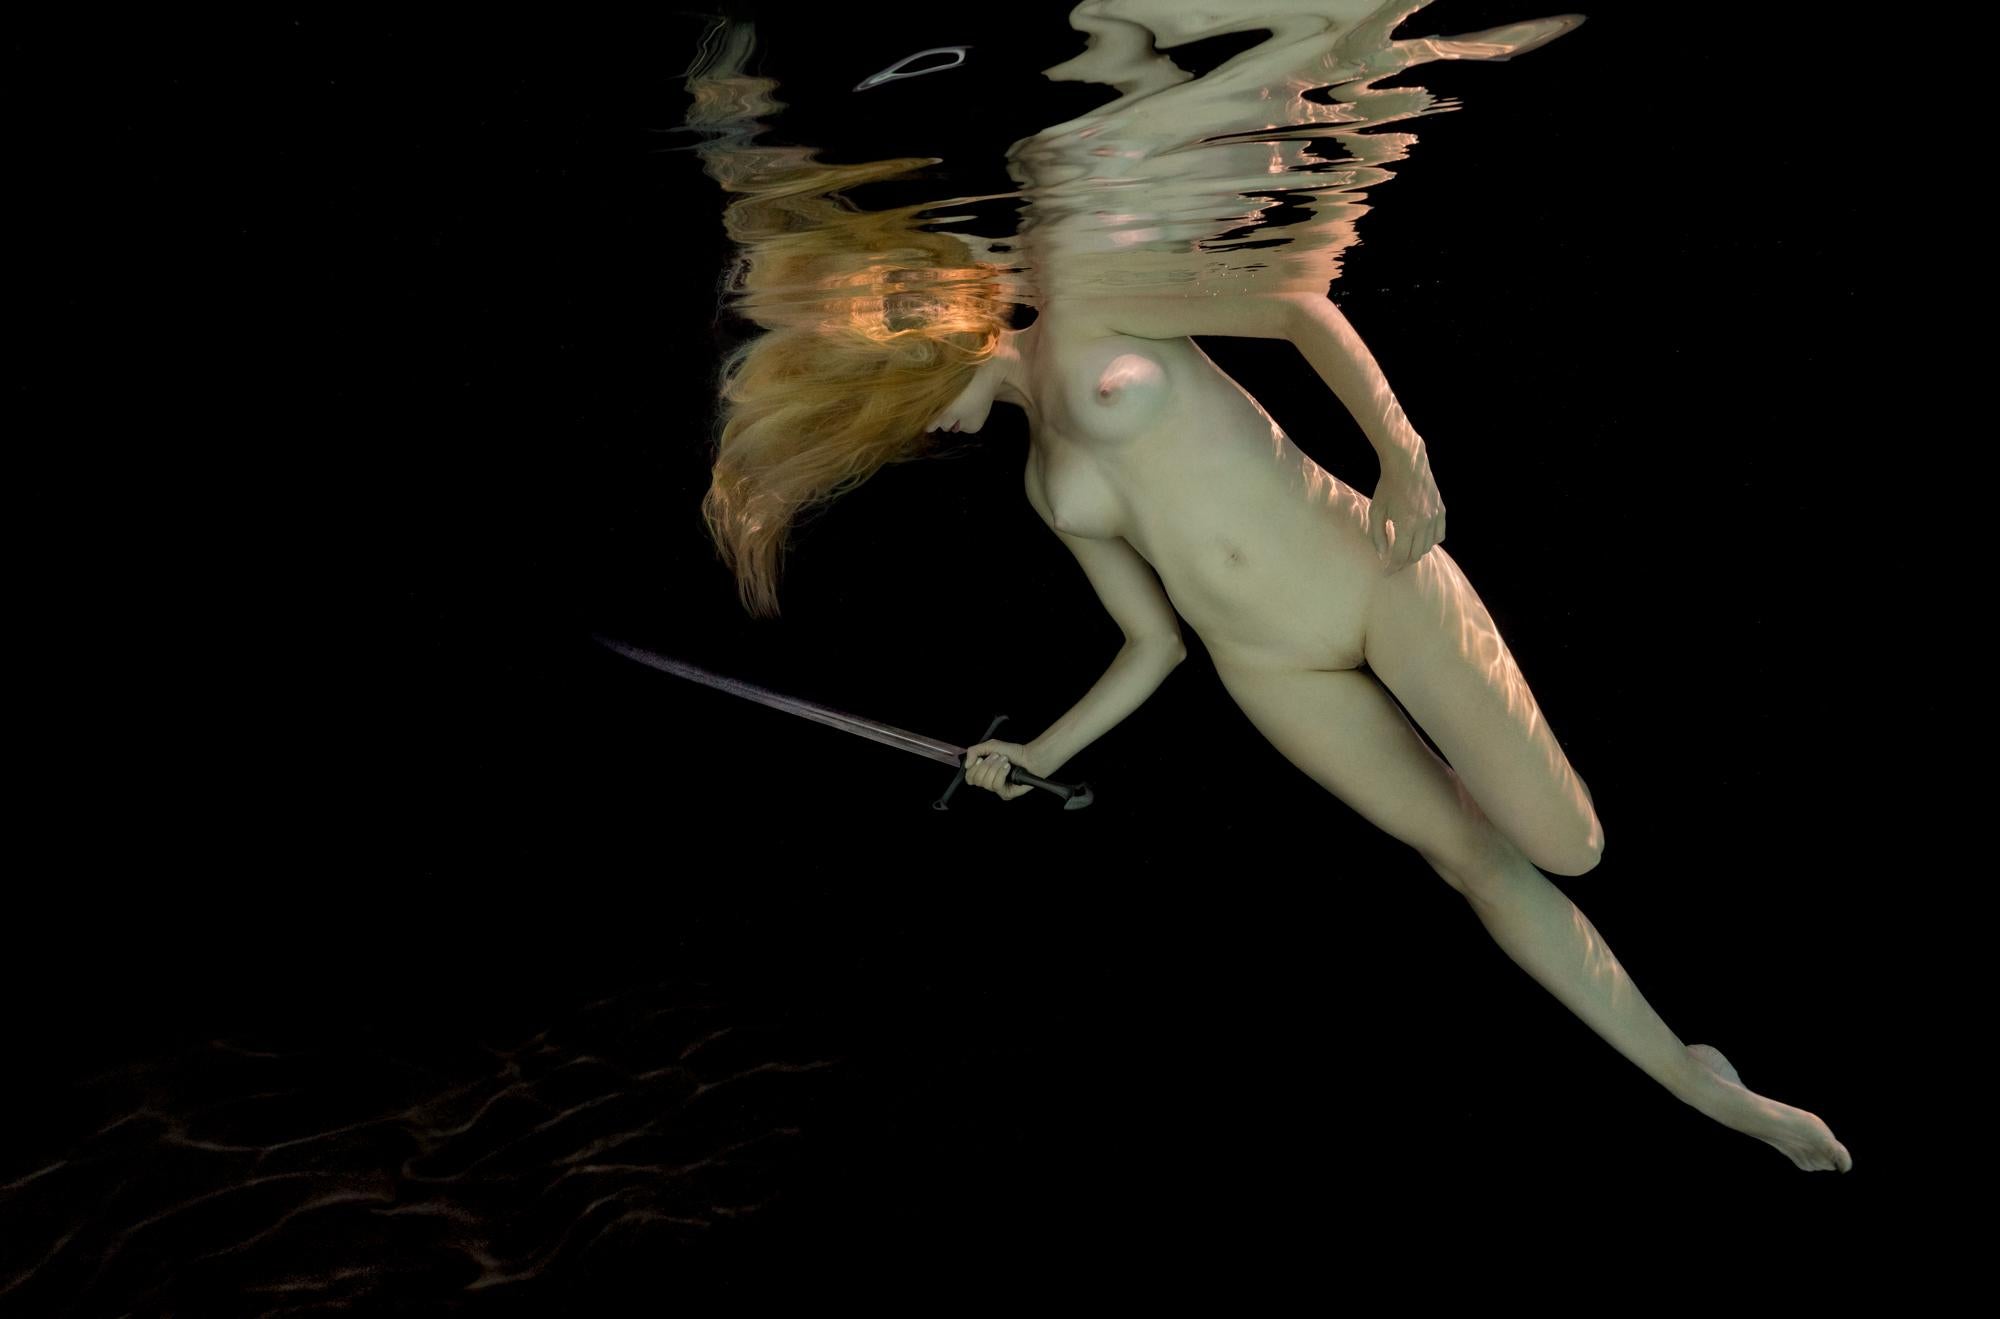 Athena - photographie de nu sous-marine - impression pigmentaire d'archives